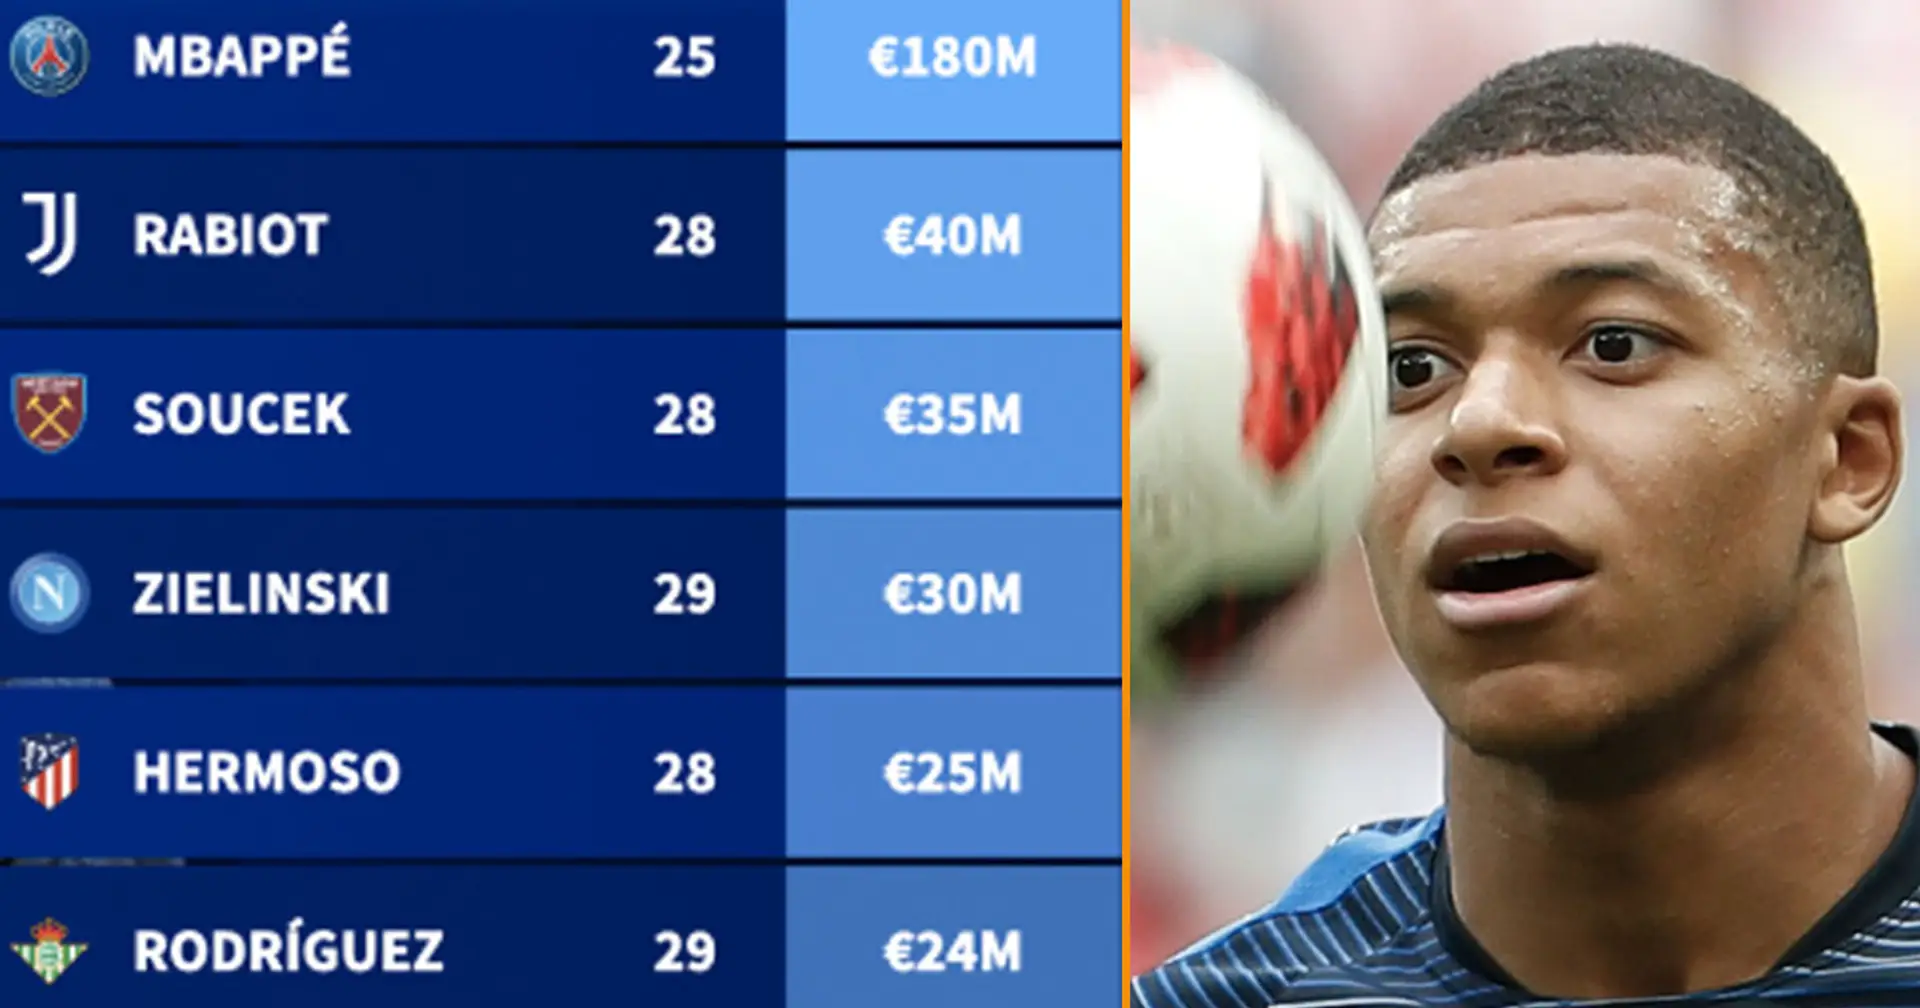 Mbappé, Wan-Bissaka et huit autres joueurs très coûteux qui pourraient changer de club en janvier